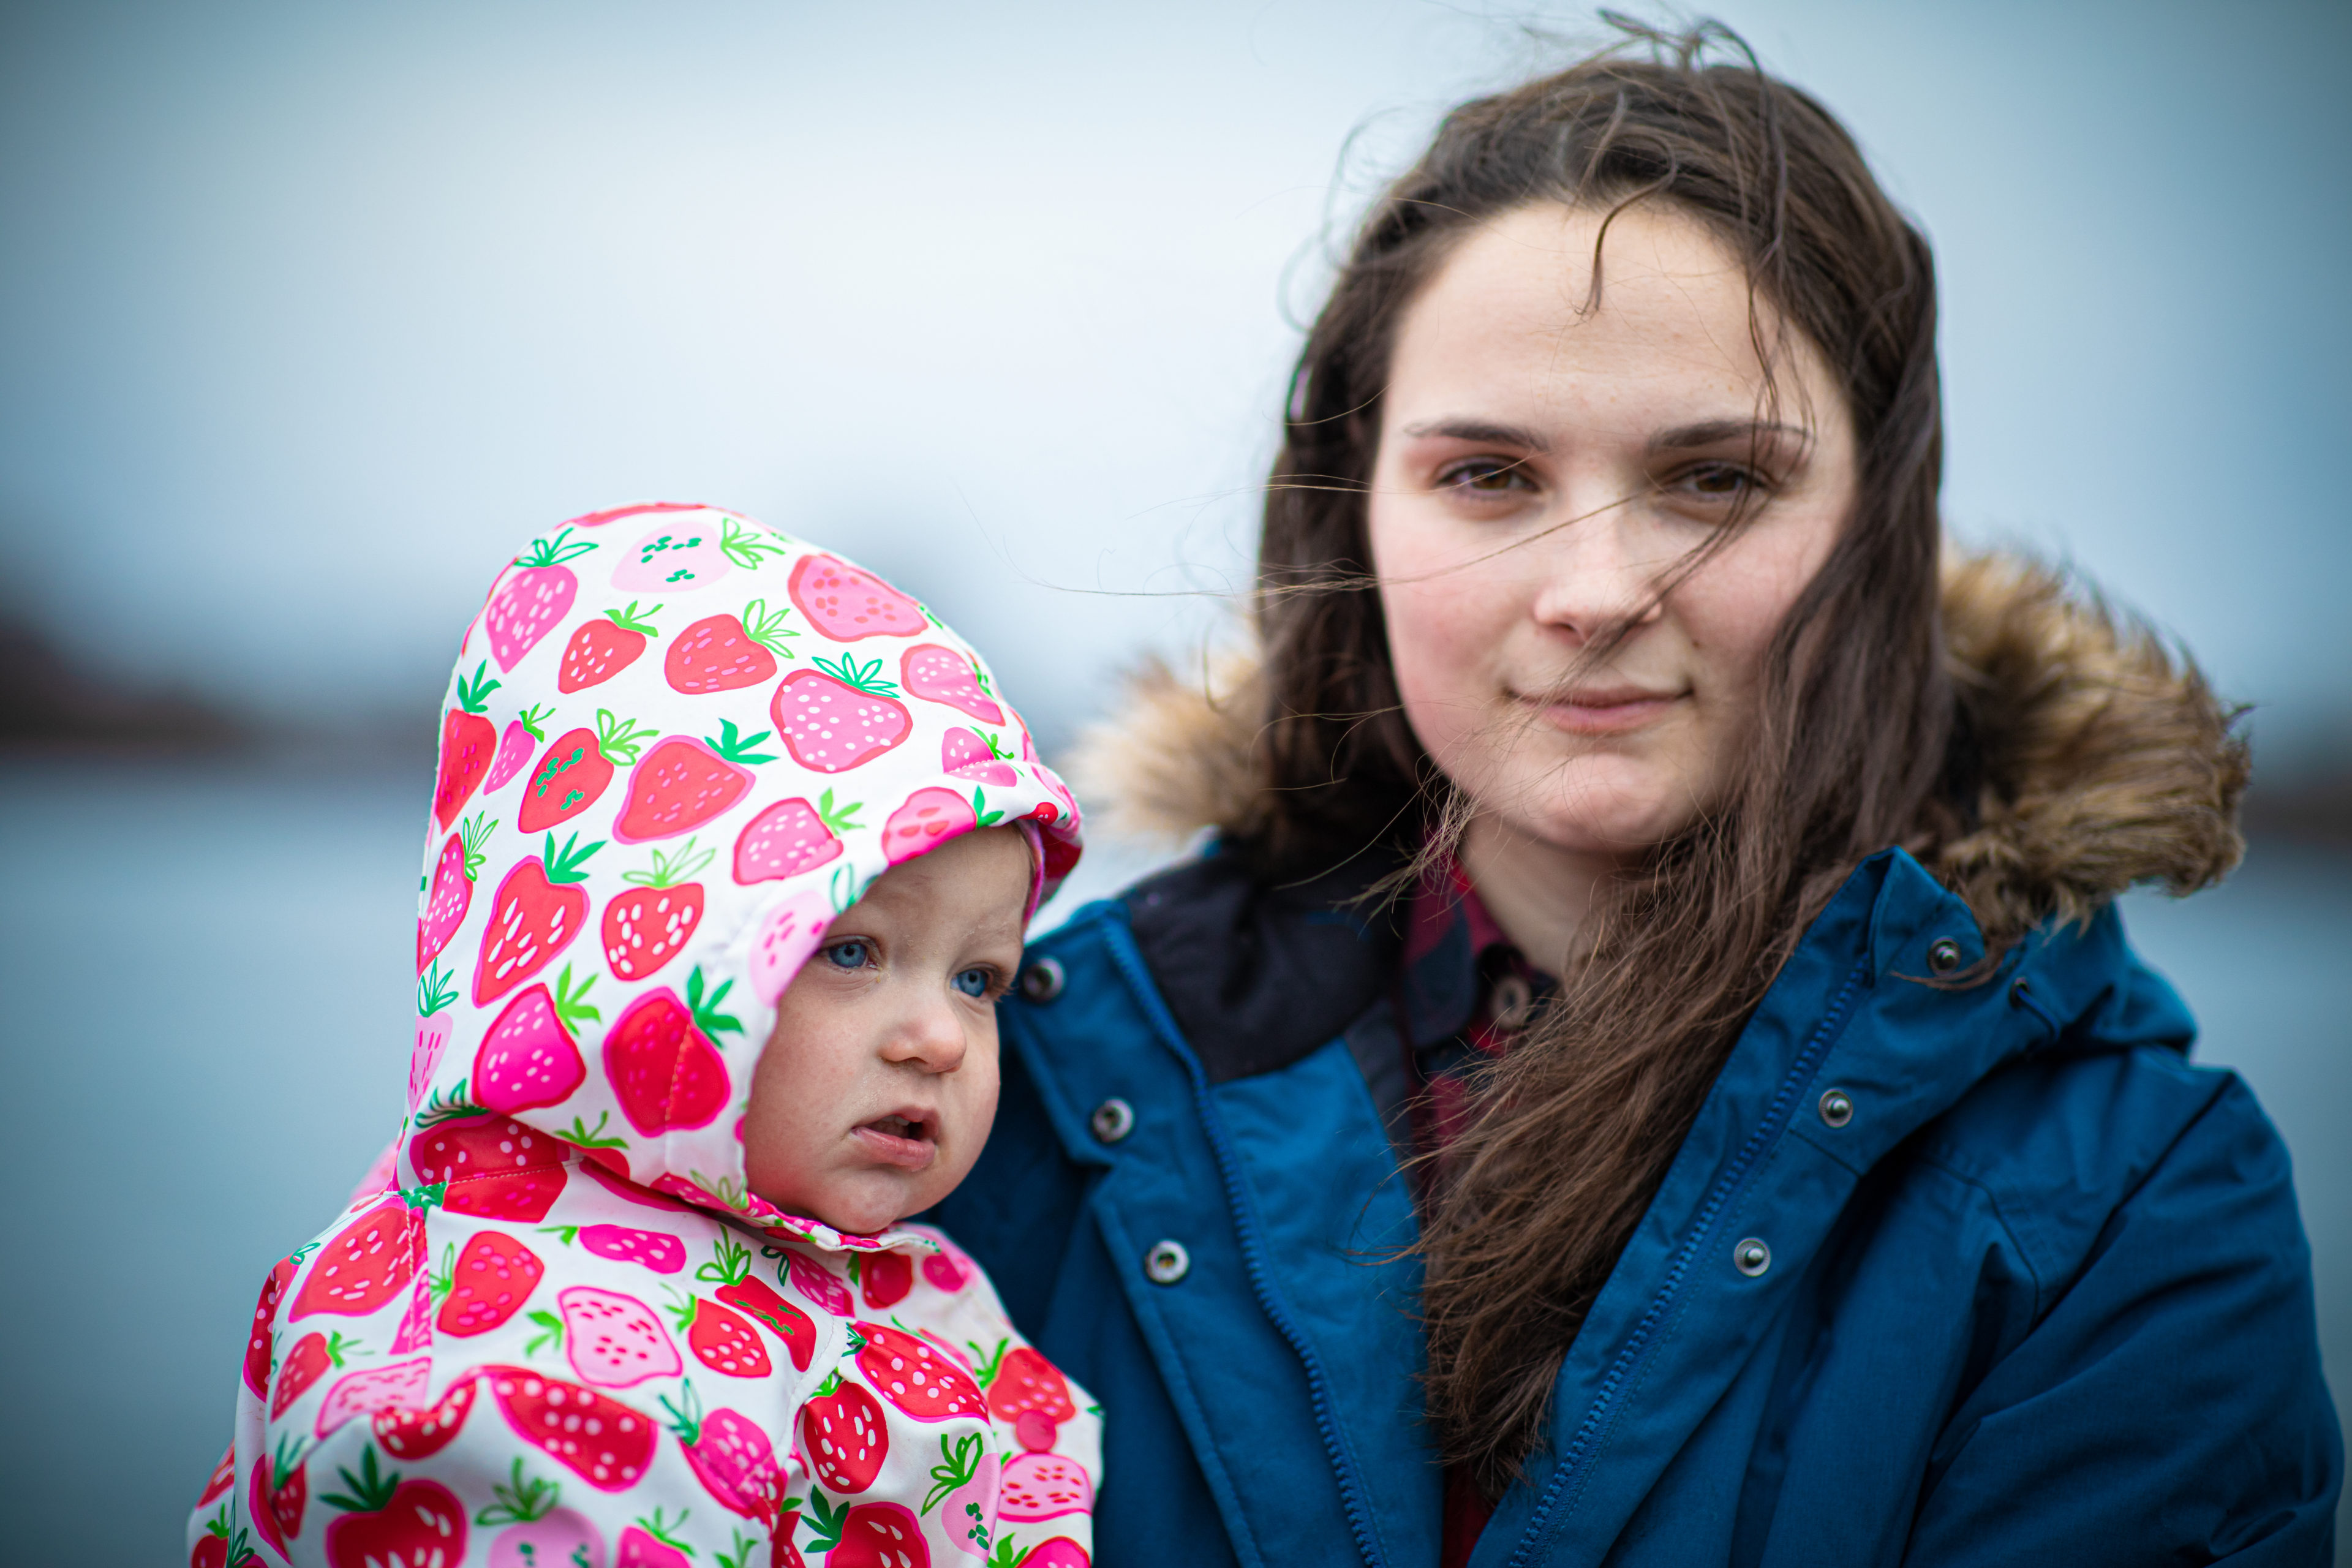 Bilde av en ung kvinne med brunt hår og blå jakke. Hun holder datteren sin i armene. Datteren er rundt 4 år, og har på seg en rosa regnjakke med røde prikker.